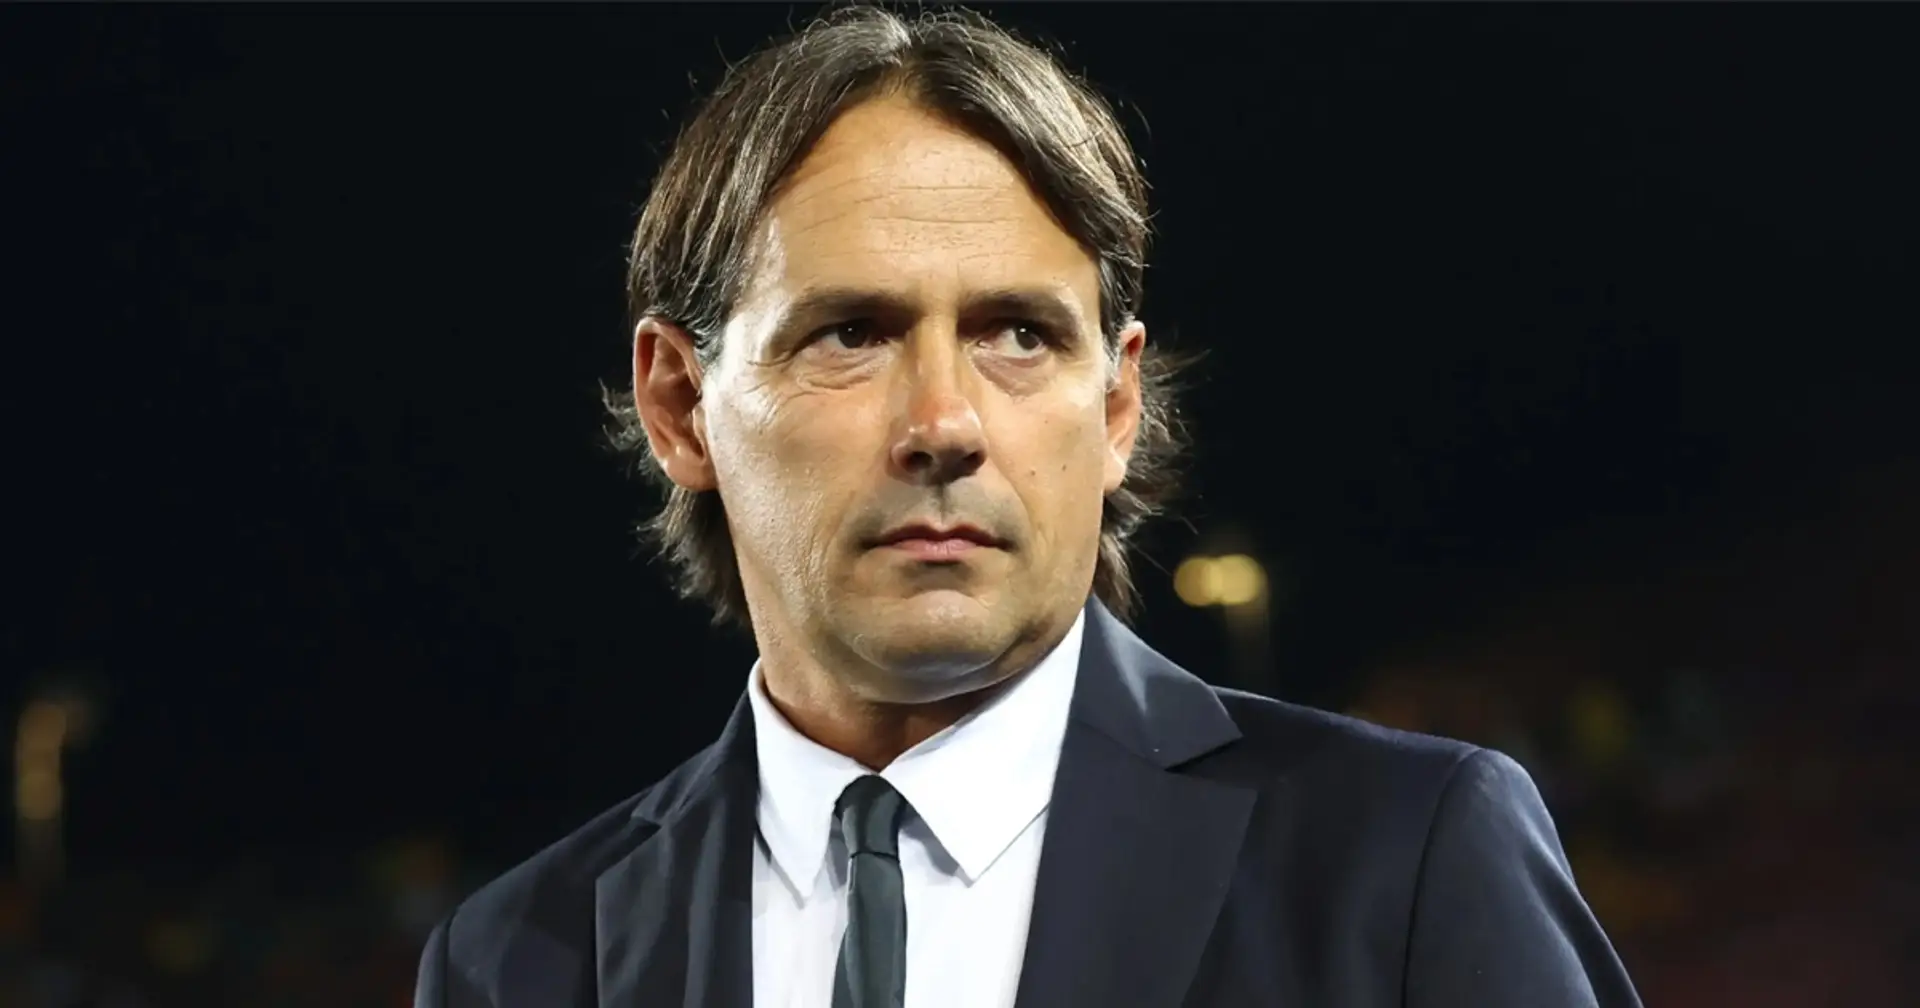 3 Top club europei vogliono Inzaghi: un fattore però lo lega all'Inter, i nerazzurri possono stare sereni